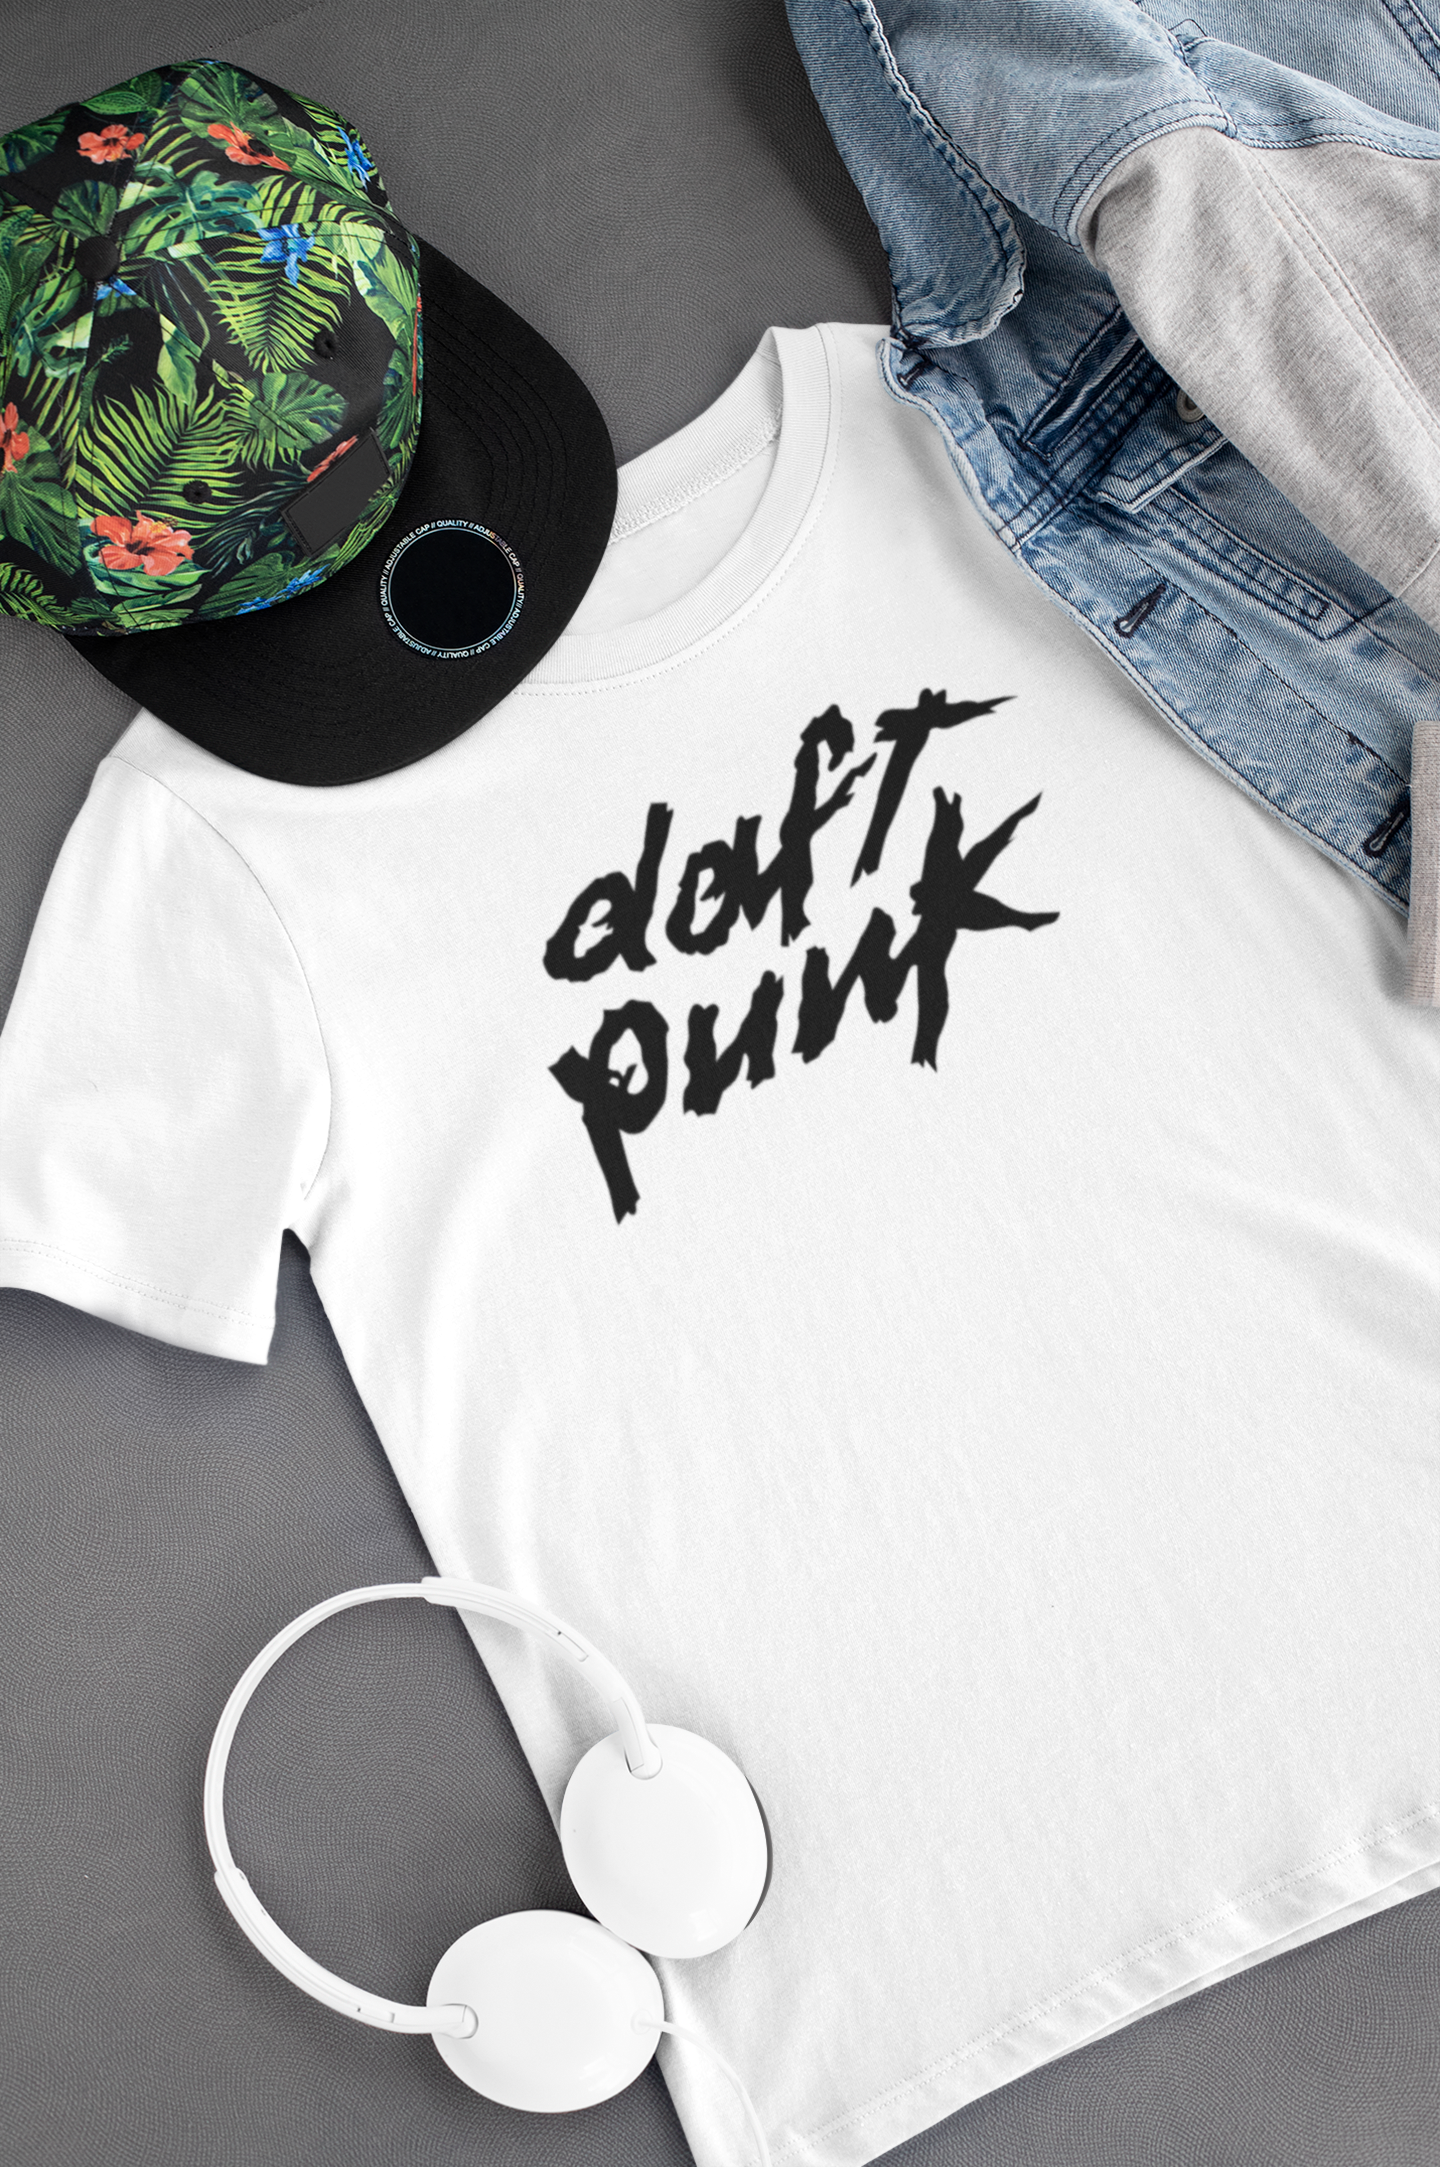 Camiseta "Daft Punk" Clássica - Música